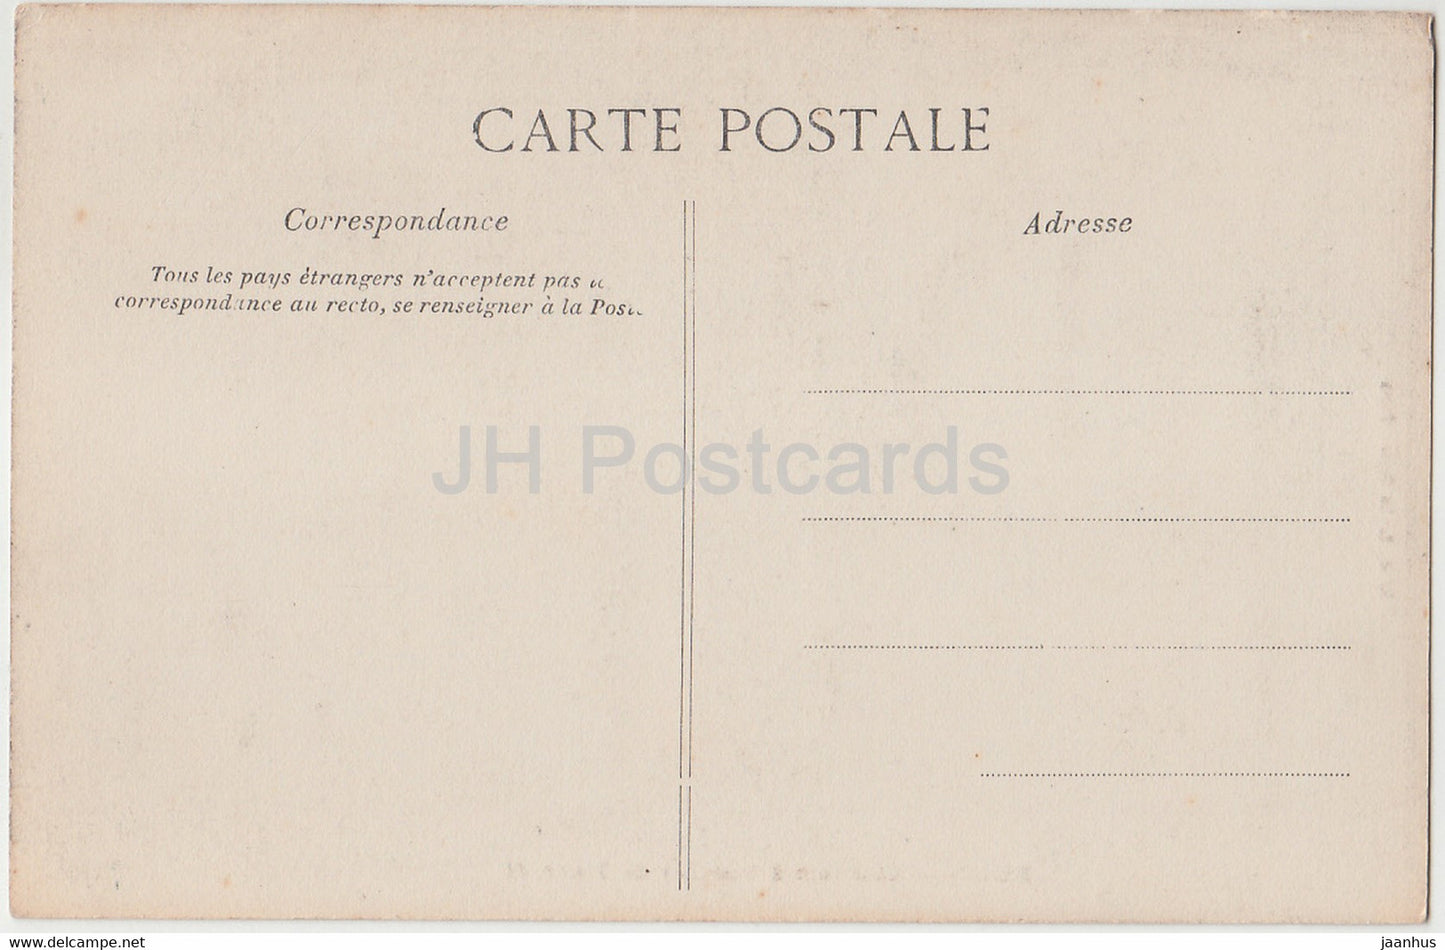 Blois - Chambre a Coucher de Henri II - castle - old postcard - France - unused